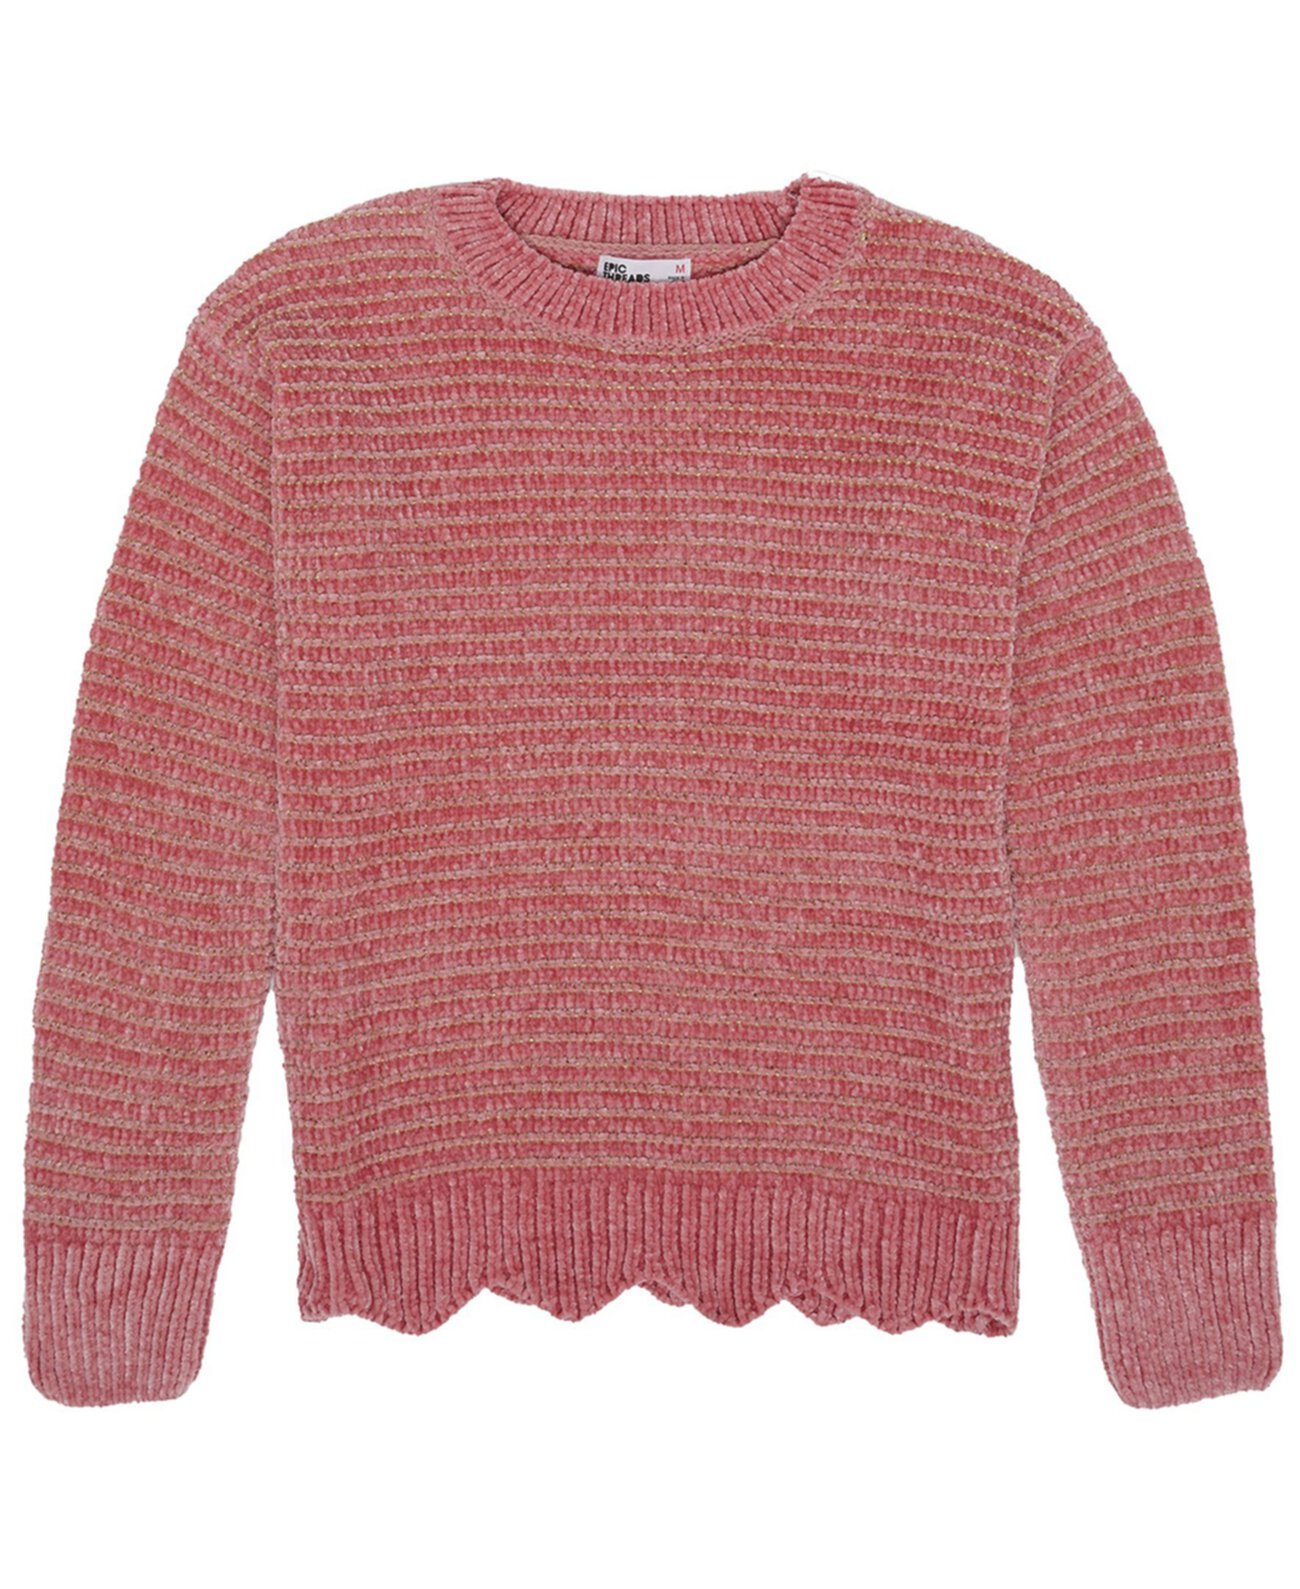 Однотонный свитер с блестками для больших девочек Epic Threads